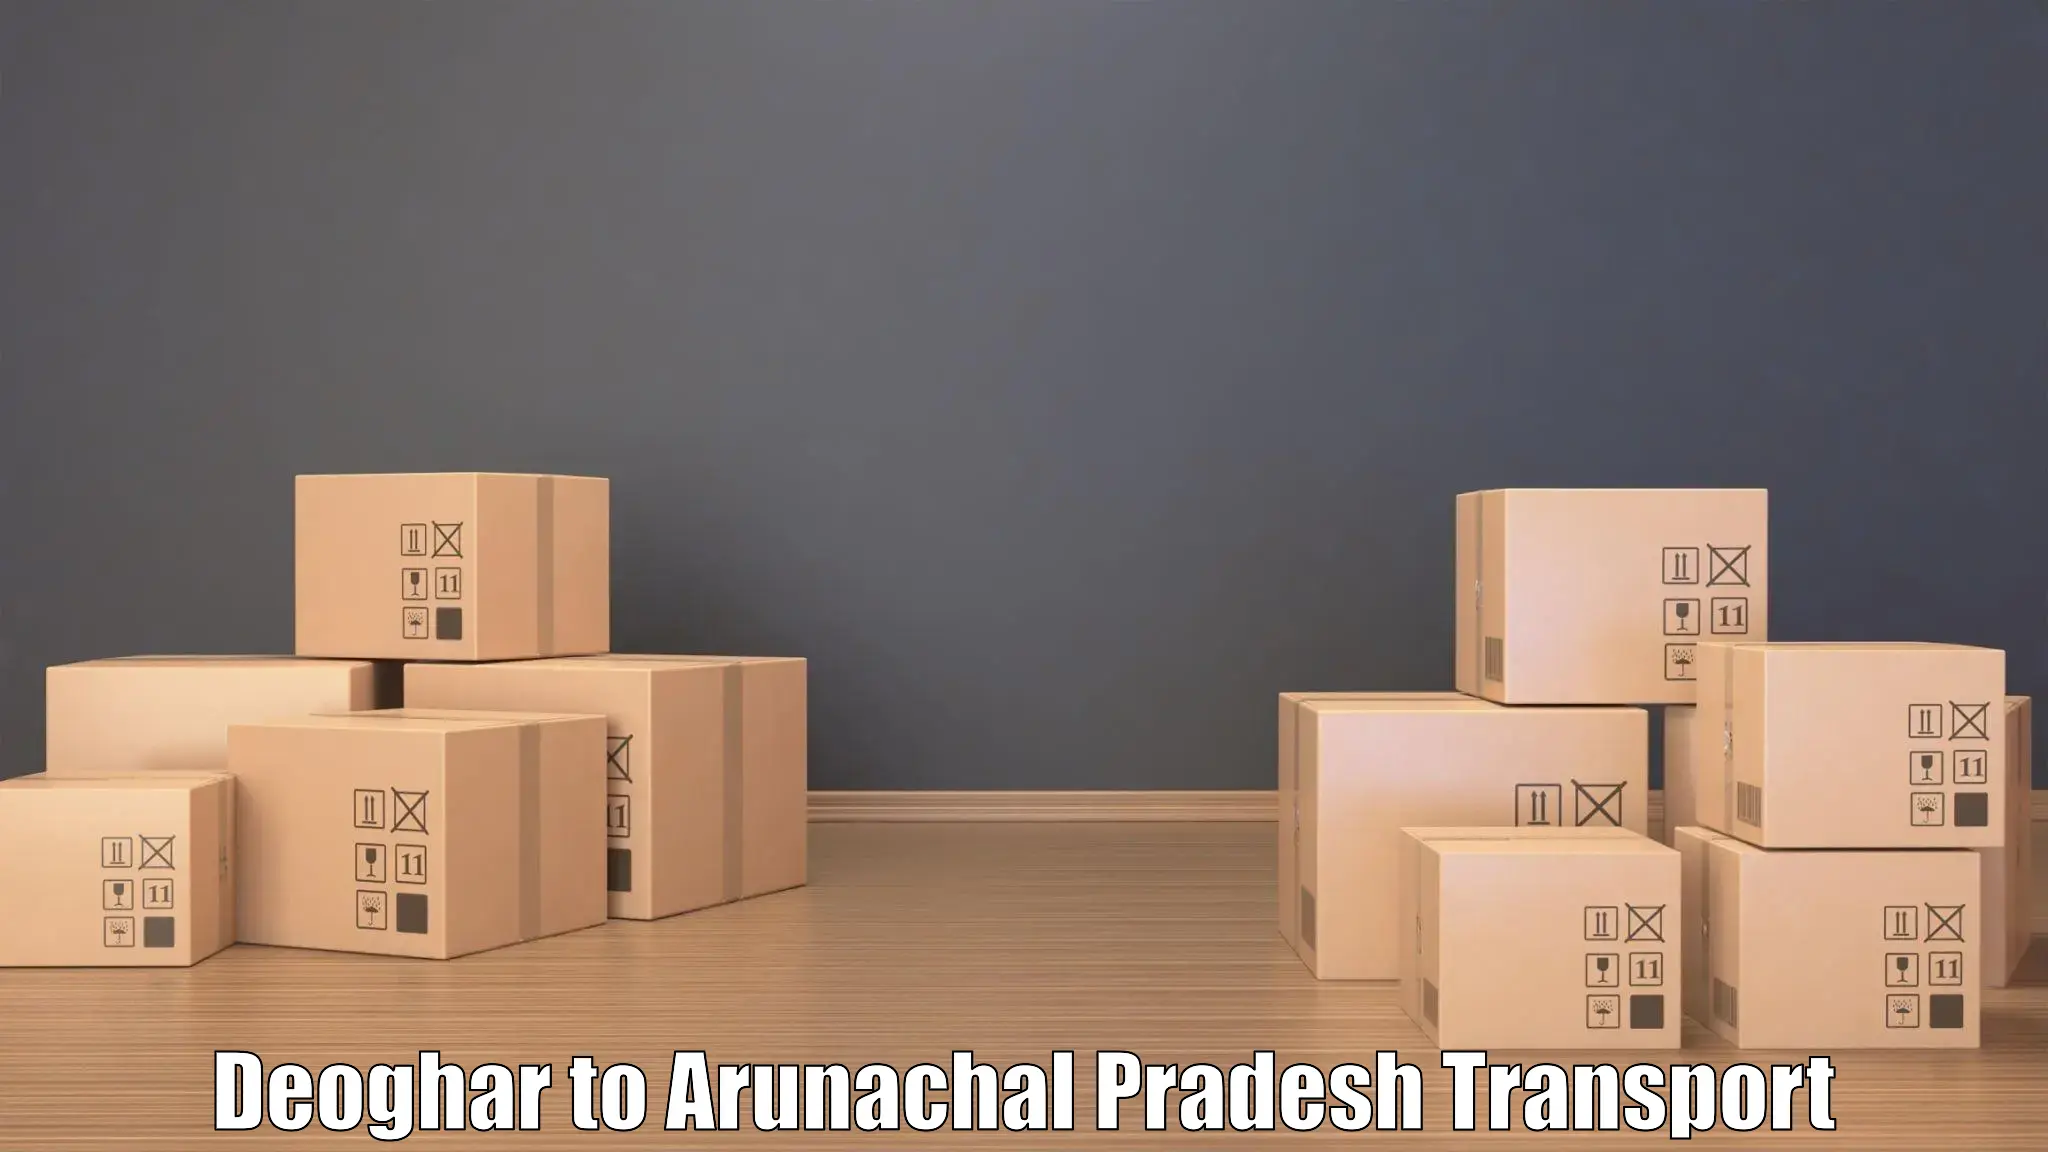 Express transport services Deoghar to Arunachal Pradesh